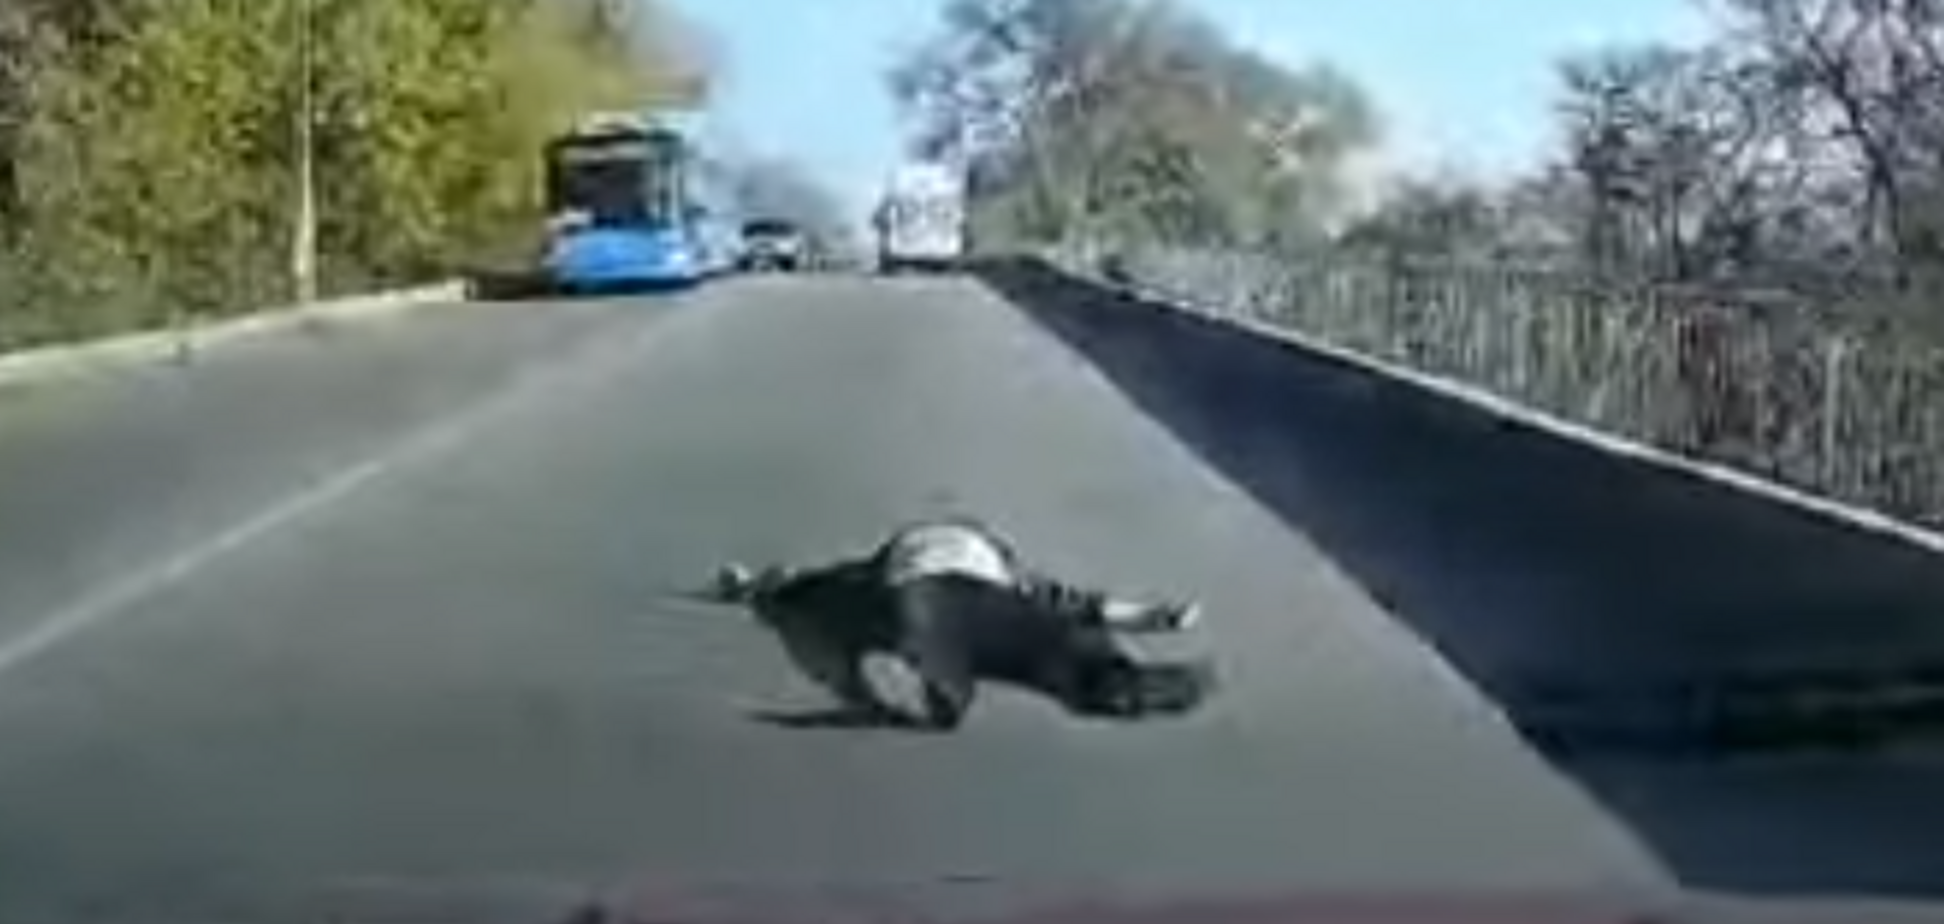 Під Дніпром пацієнт вивалився на ходу з 'швидкої': відео інциденту